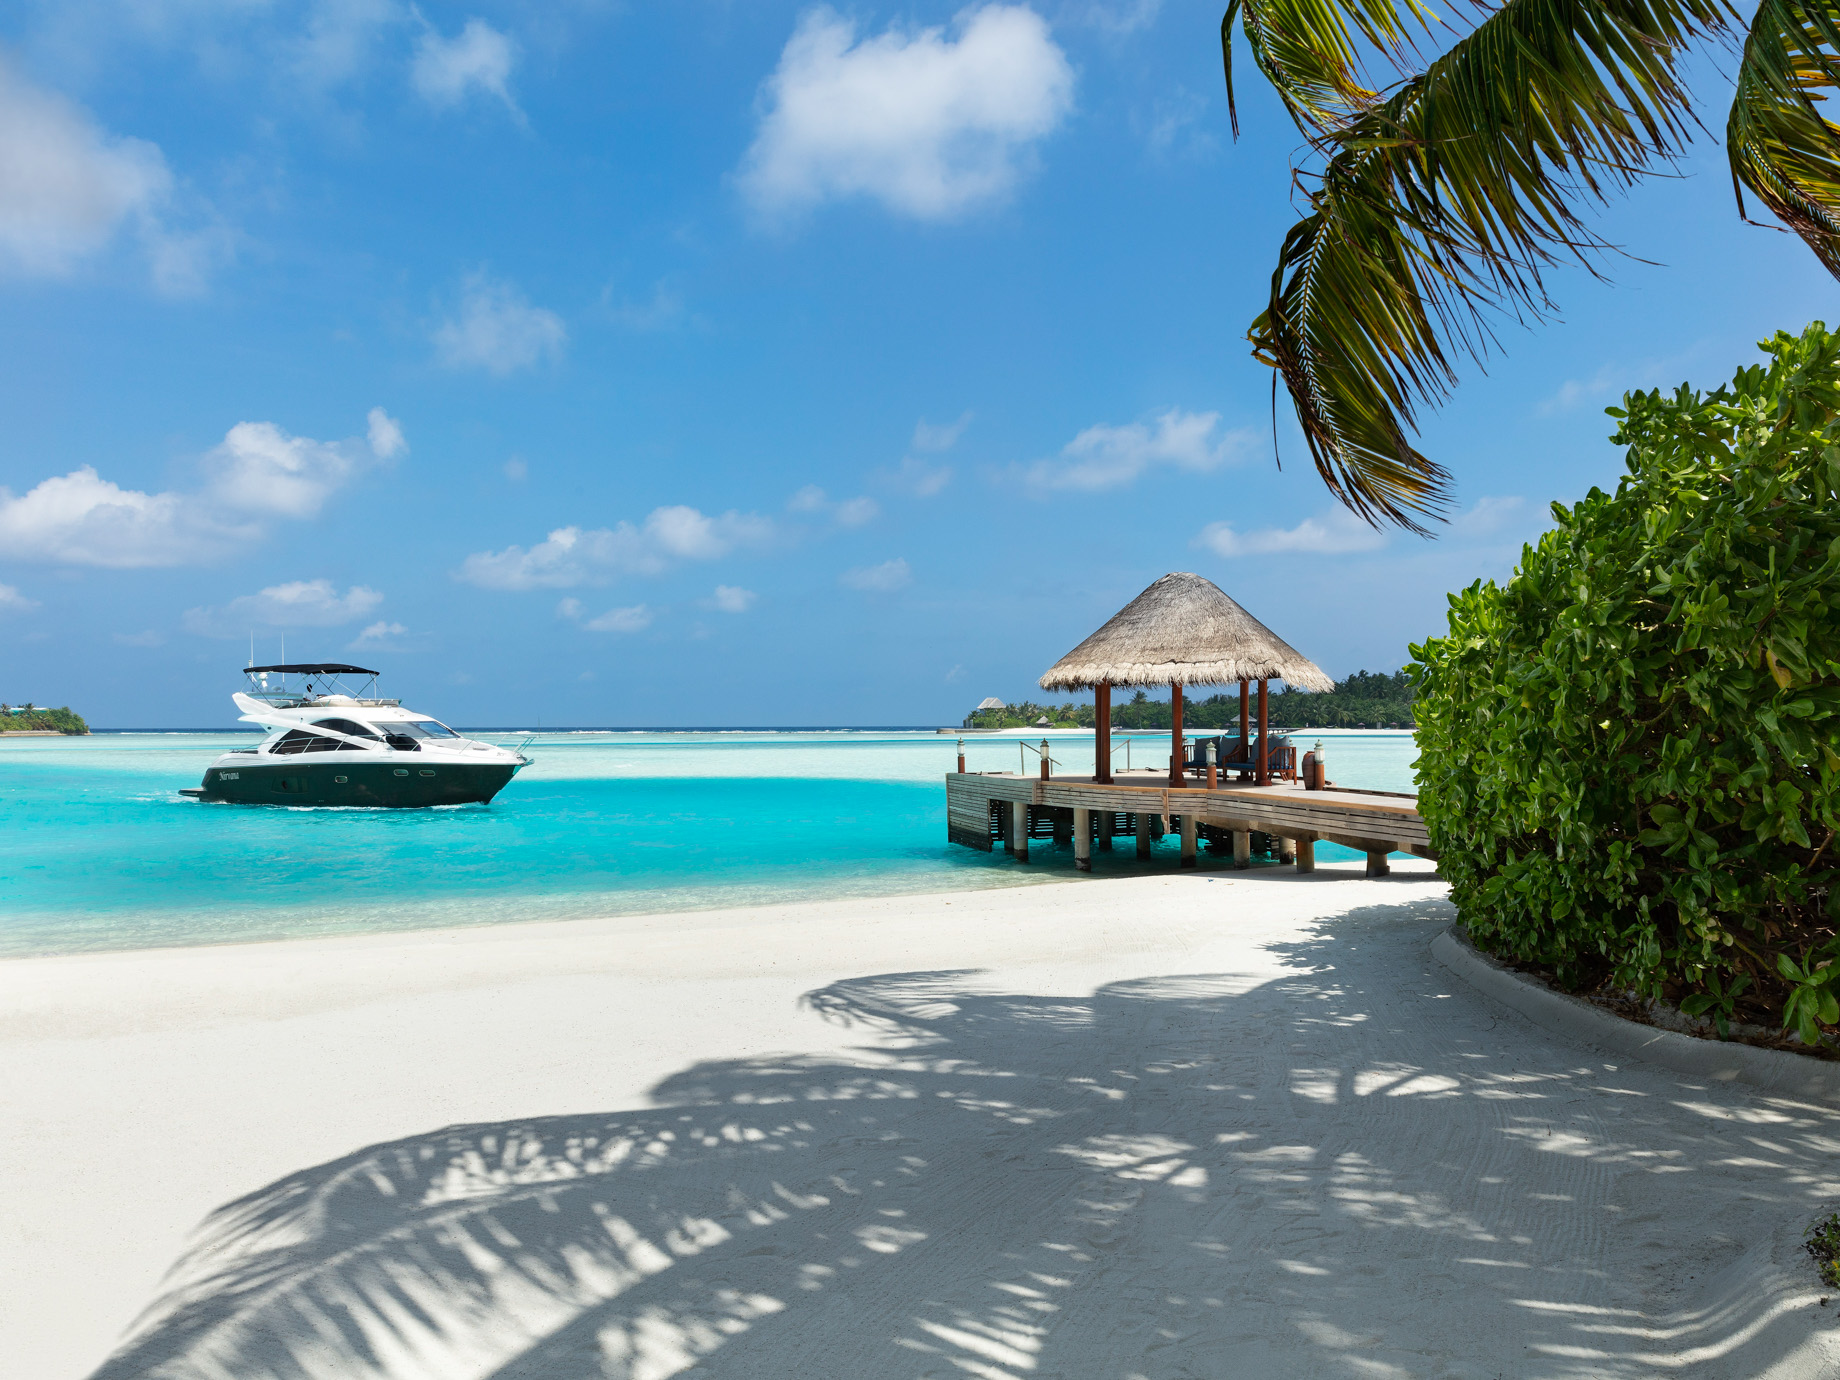 Anantara Thigu Maldives Resort – South Male Atoll, Maldives – Boat Arrival